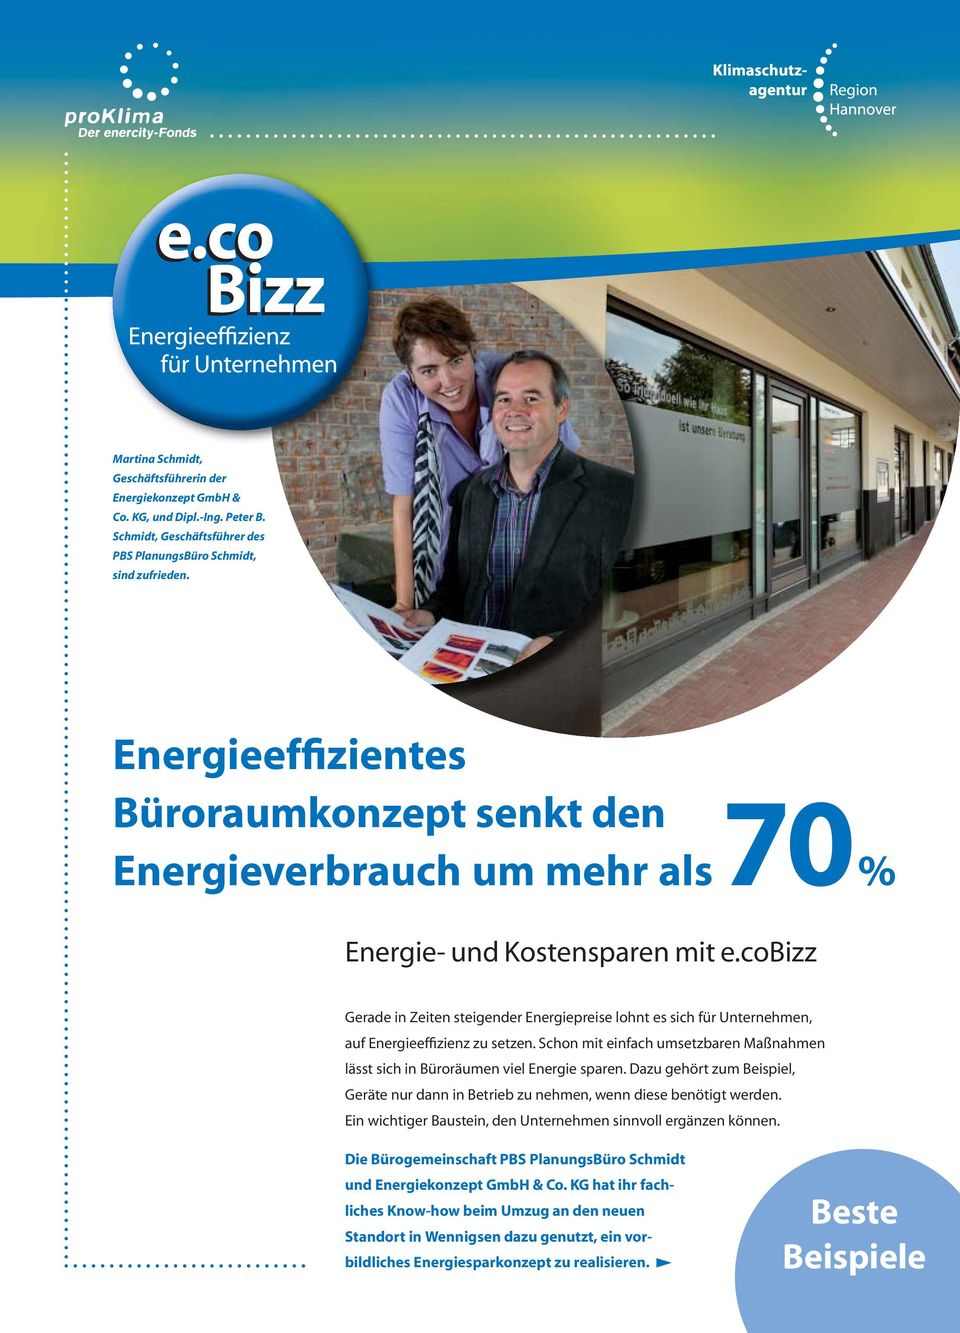 cobizz Gerade in Zeiten steigender Energiepreise lohnt es sich für Unternehmen, auf Energieeffizienz zu setzen. Schon mit einfach umsetzbaren Maßnahmen lässt sich in Büroräumen viel Energie sparen.